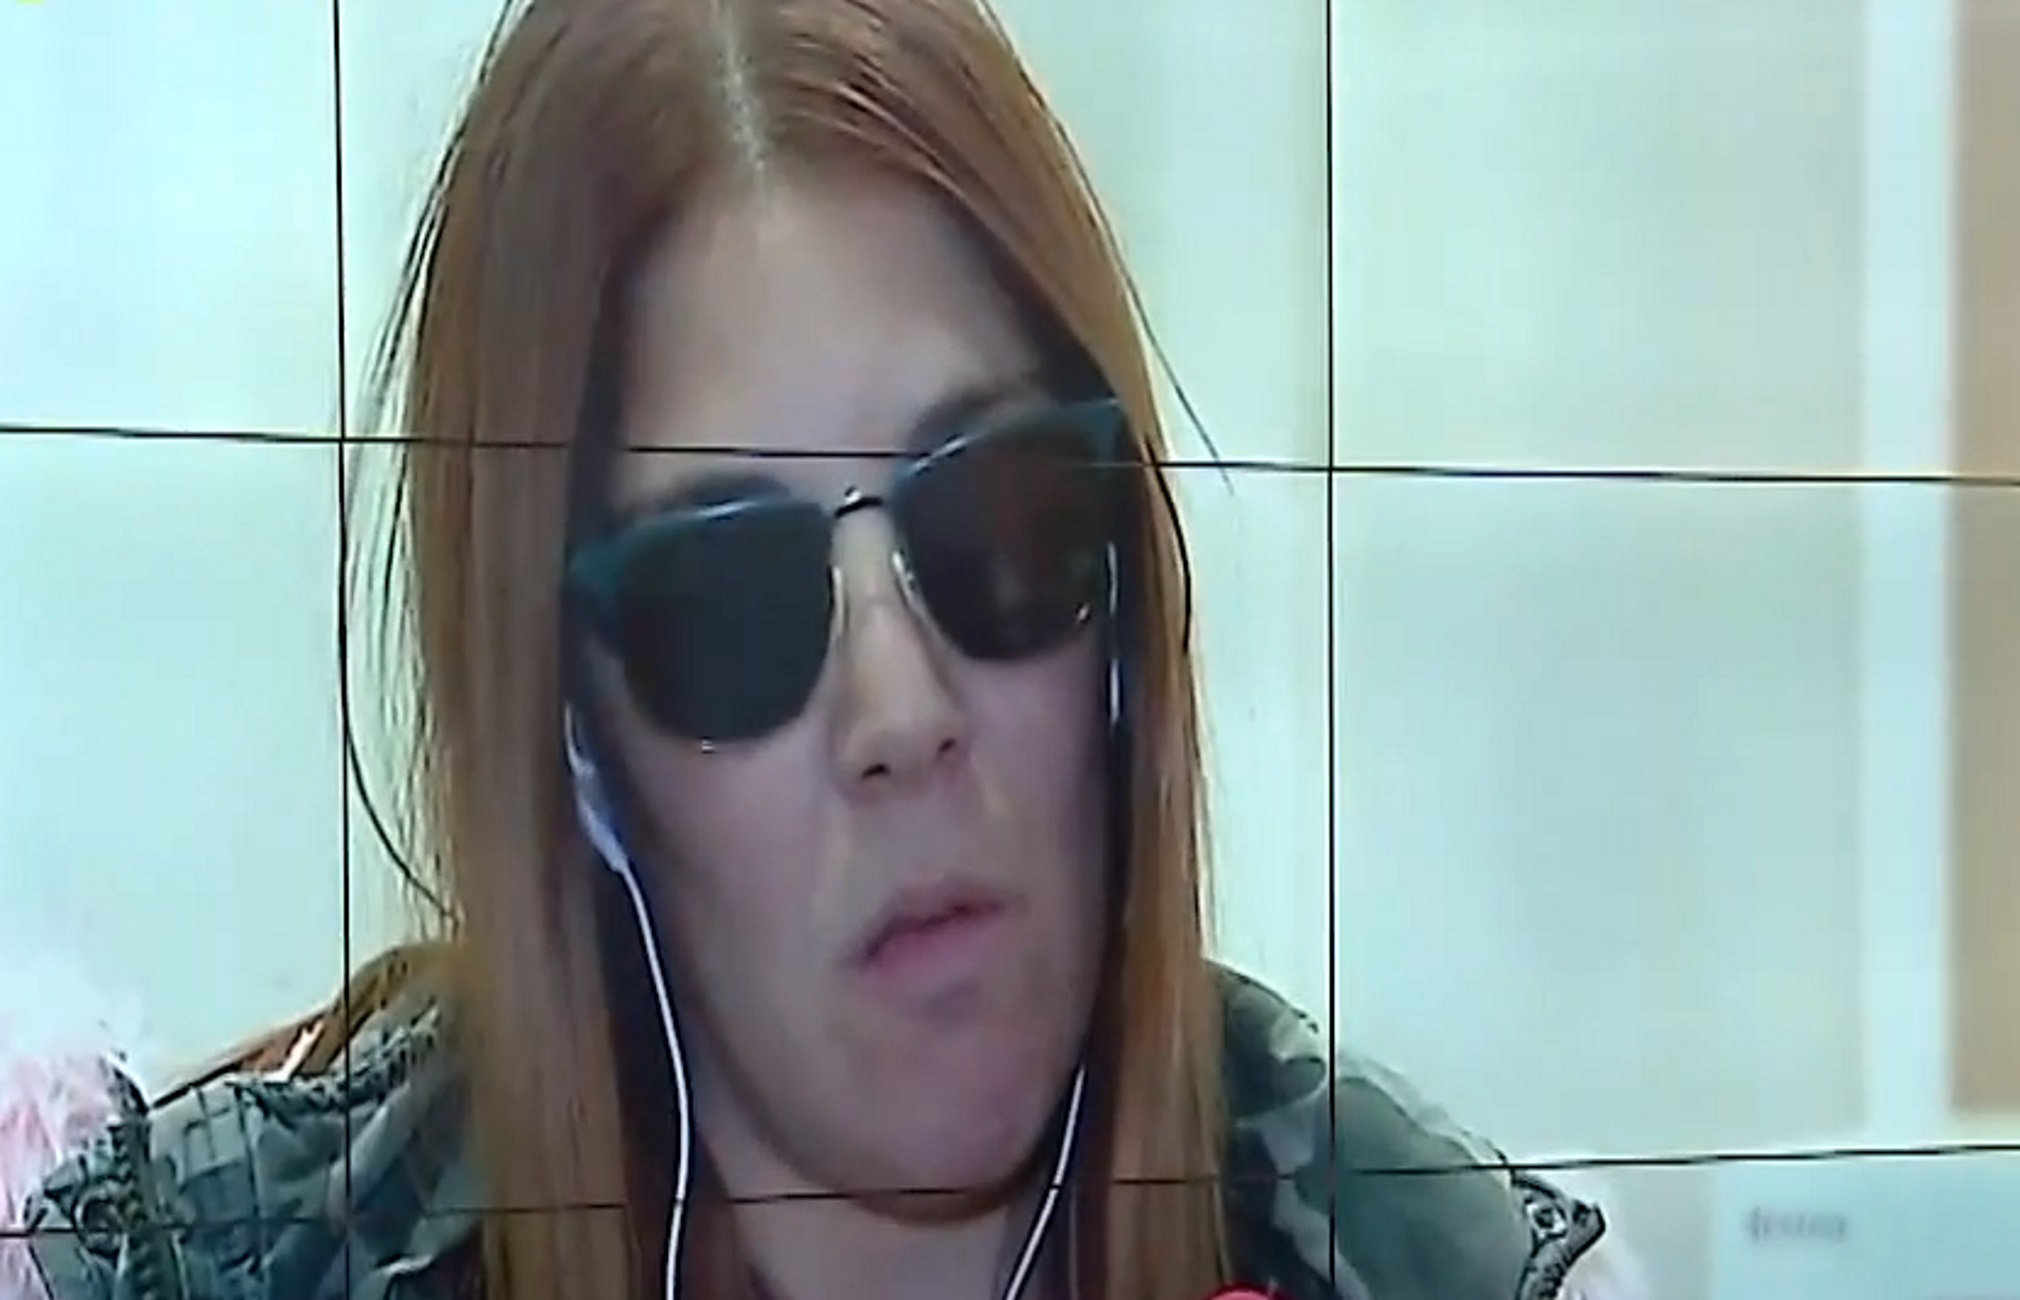 Άργος: Κύμα συμπαράστασης για τη γυναίκα που κακοποιήθηκε και μίλησε για τον εφιάλτη της